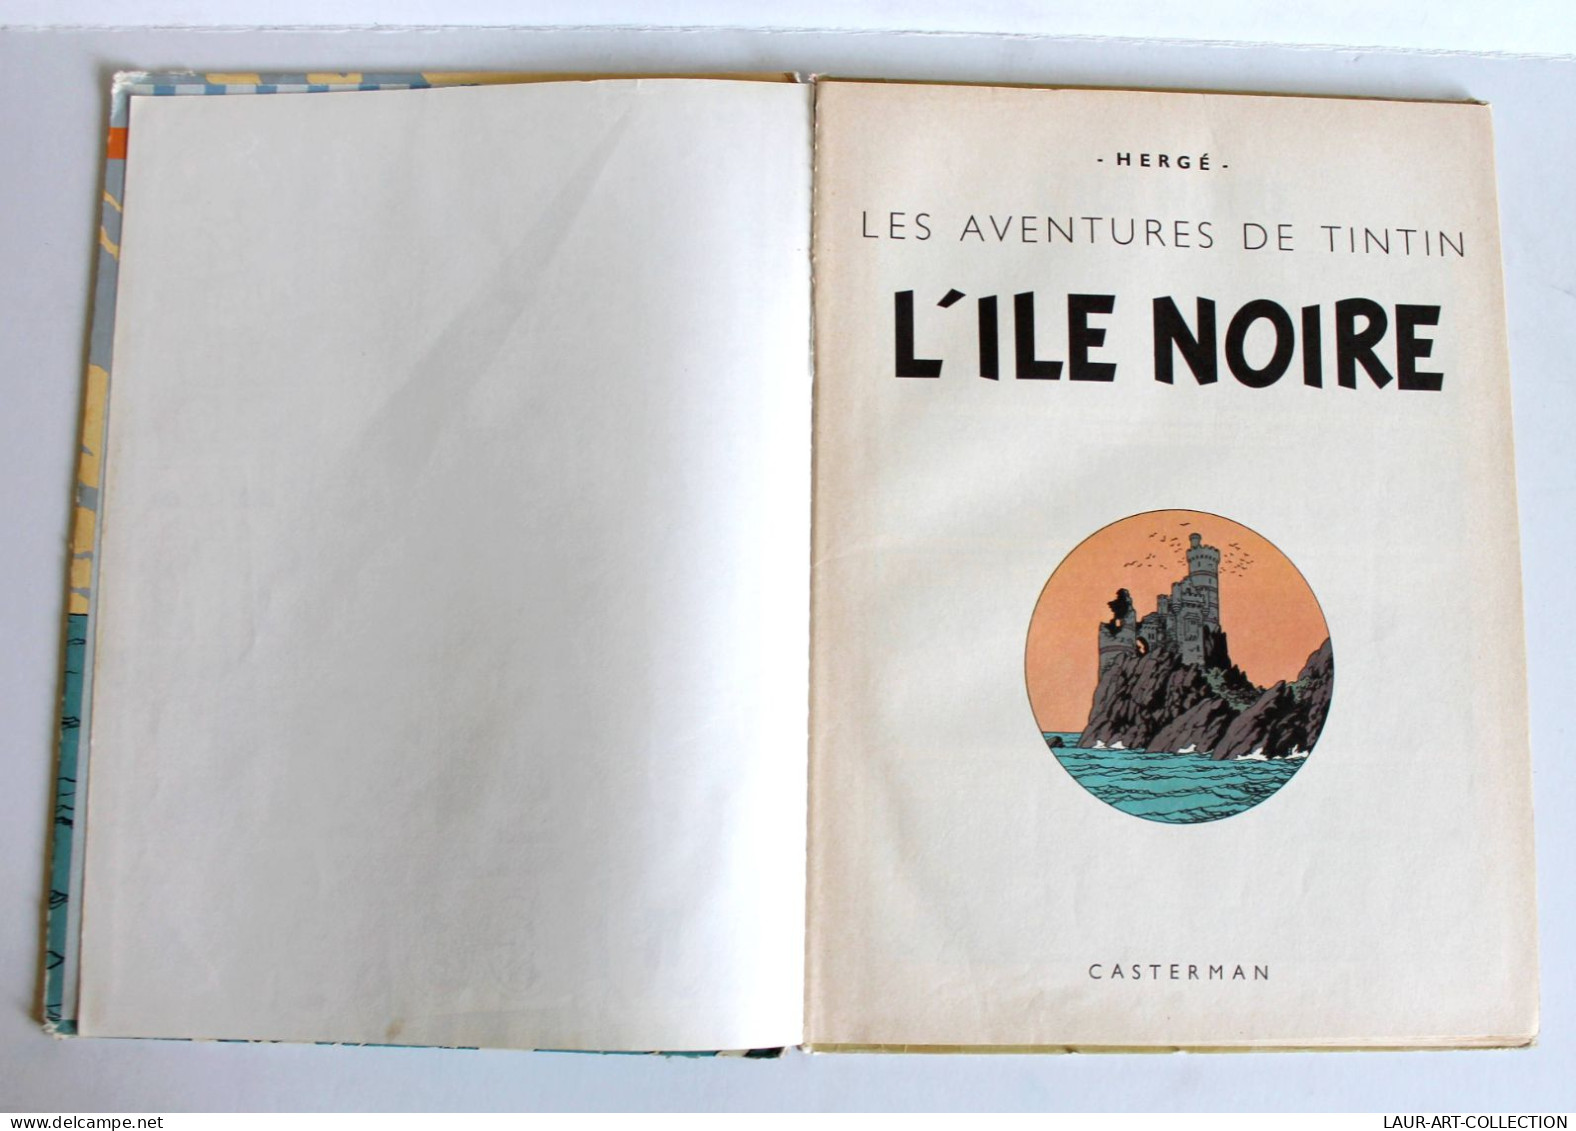 LES AVENTURES DE TINTIN - L'ILE NOIRE Par HERGE 1947 EDITION CASTERMAN / BD / ANCIEN LIVRE DE COLLECTION (3008.16) - Tintin